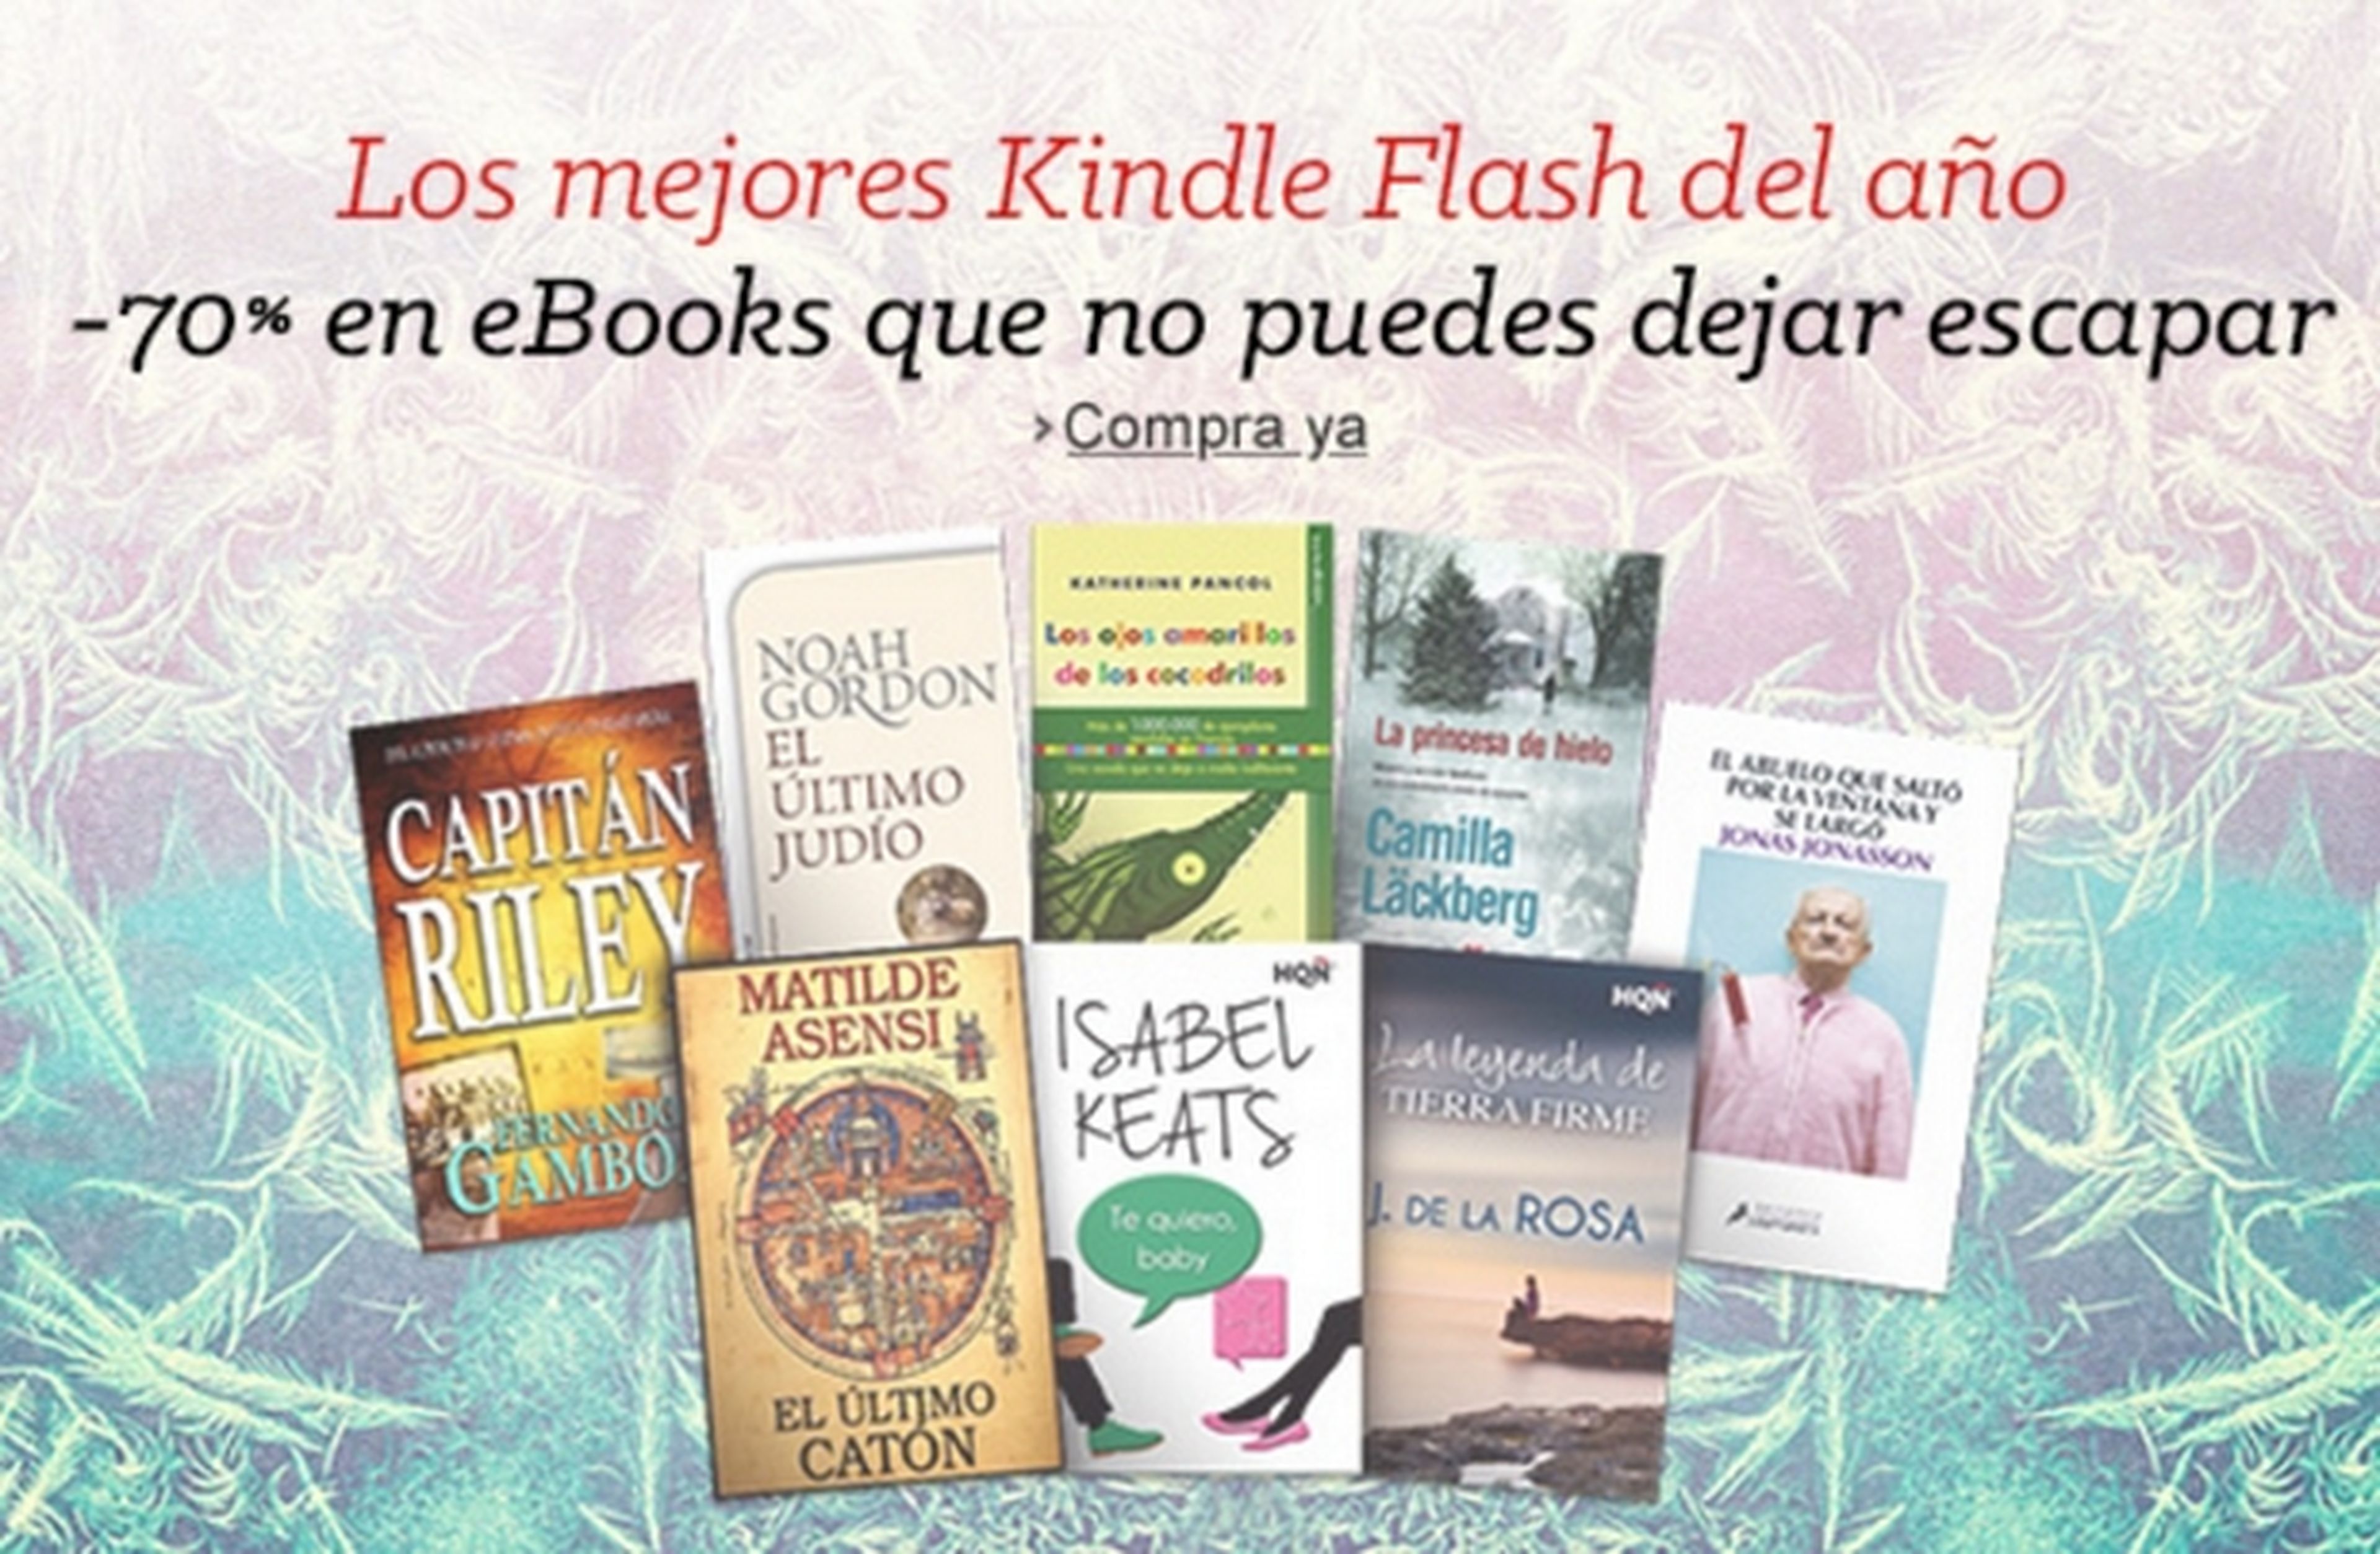 Kindle Paperwhite de Amazon baja de precio a tiempo para Reyes